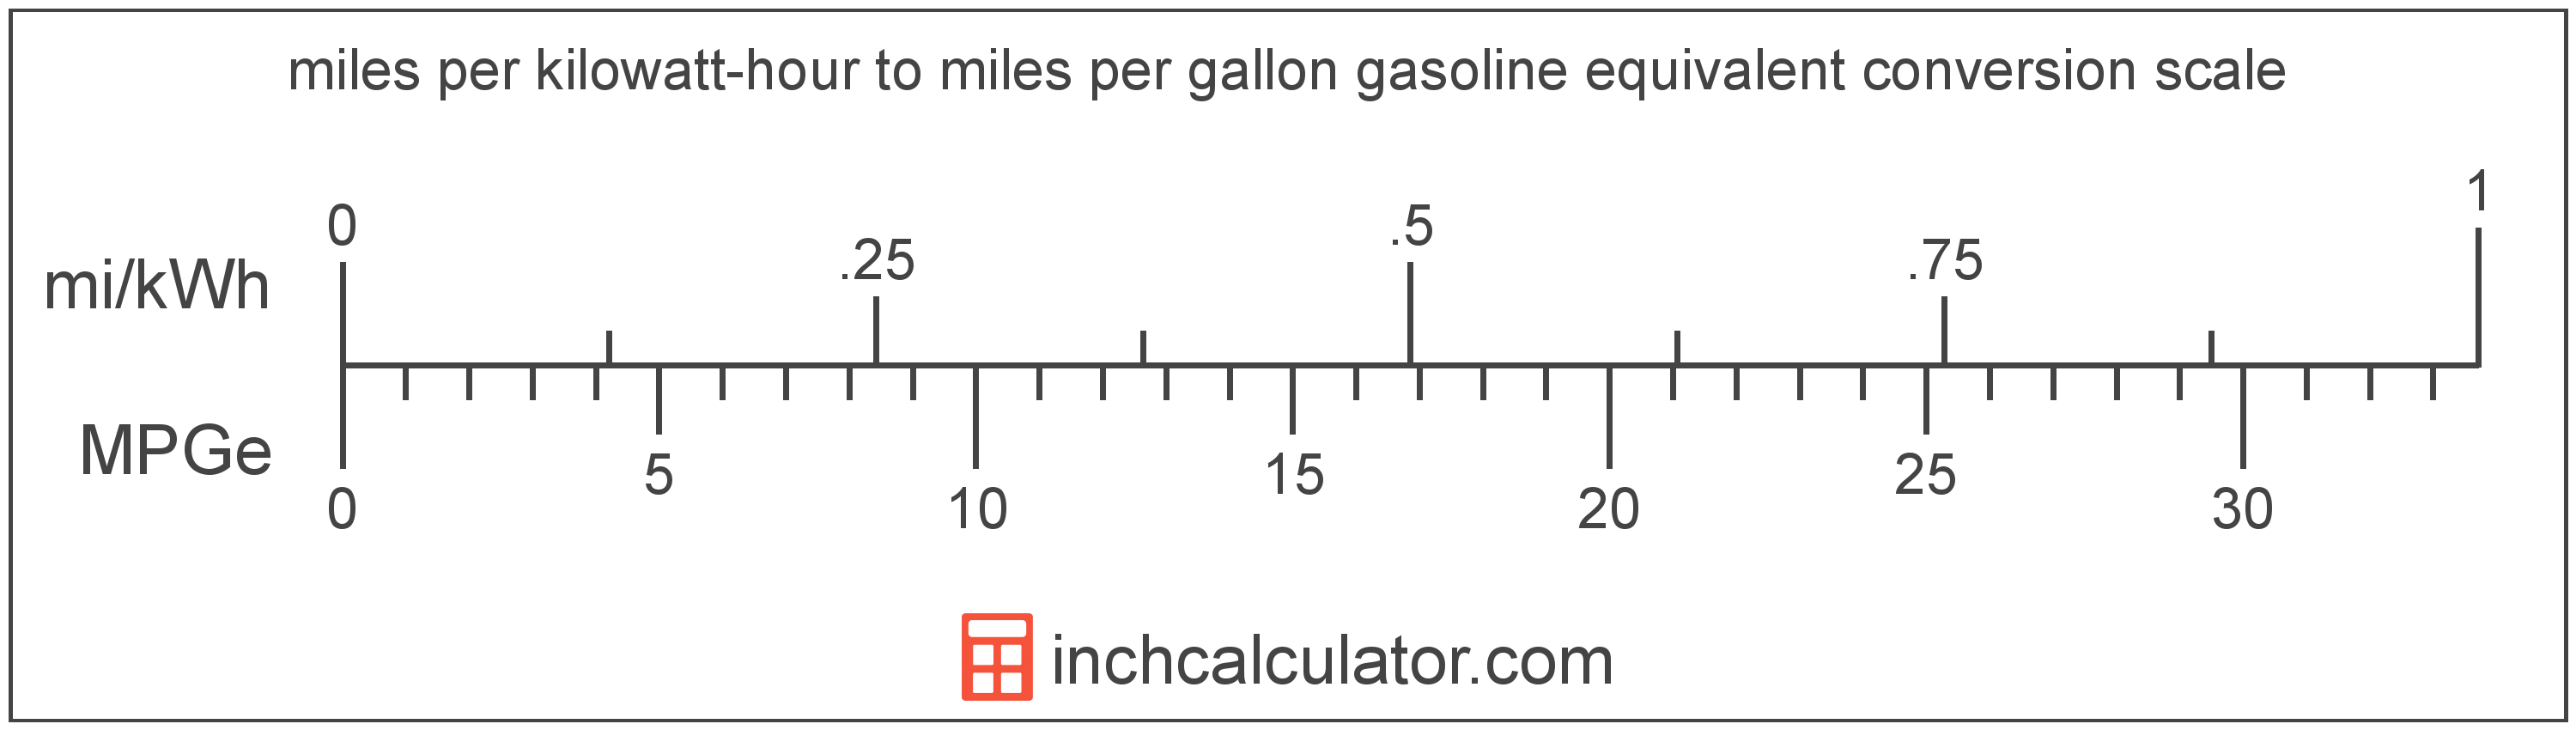 Miles Per Gallon Gasoline Equivalent to Miles Per Kilowatt-hour Conversion